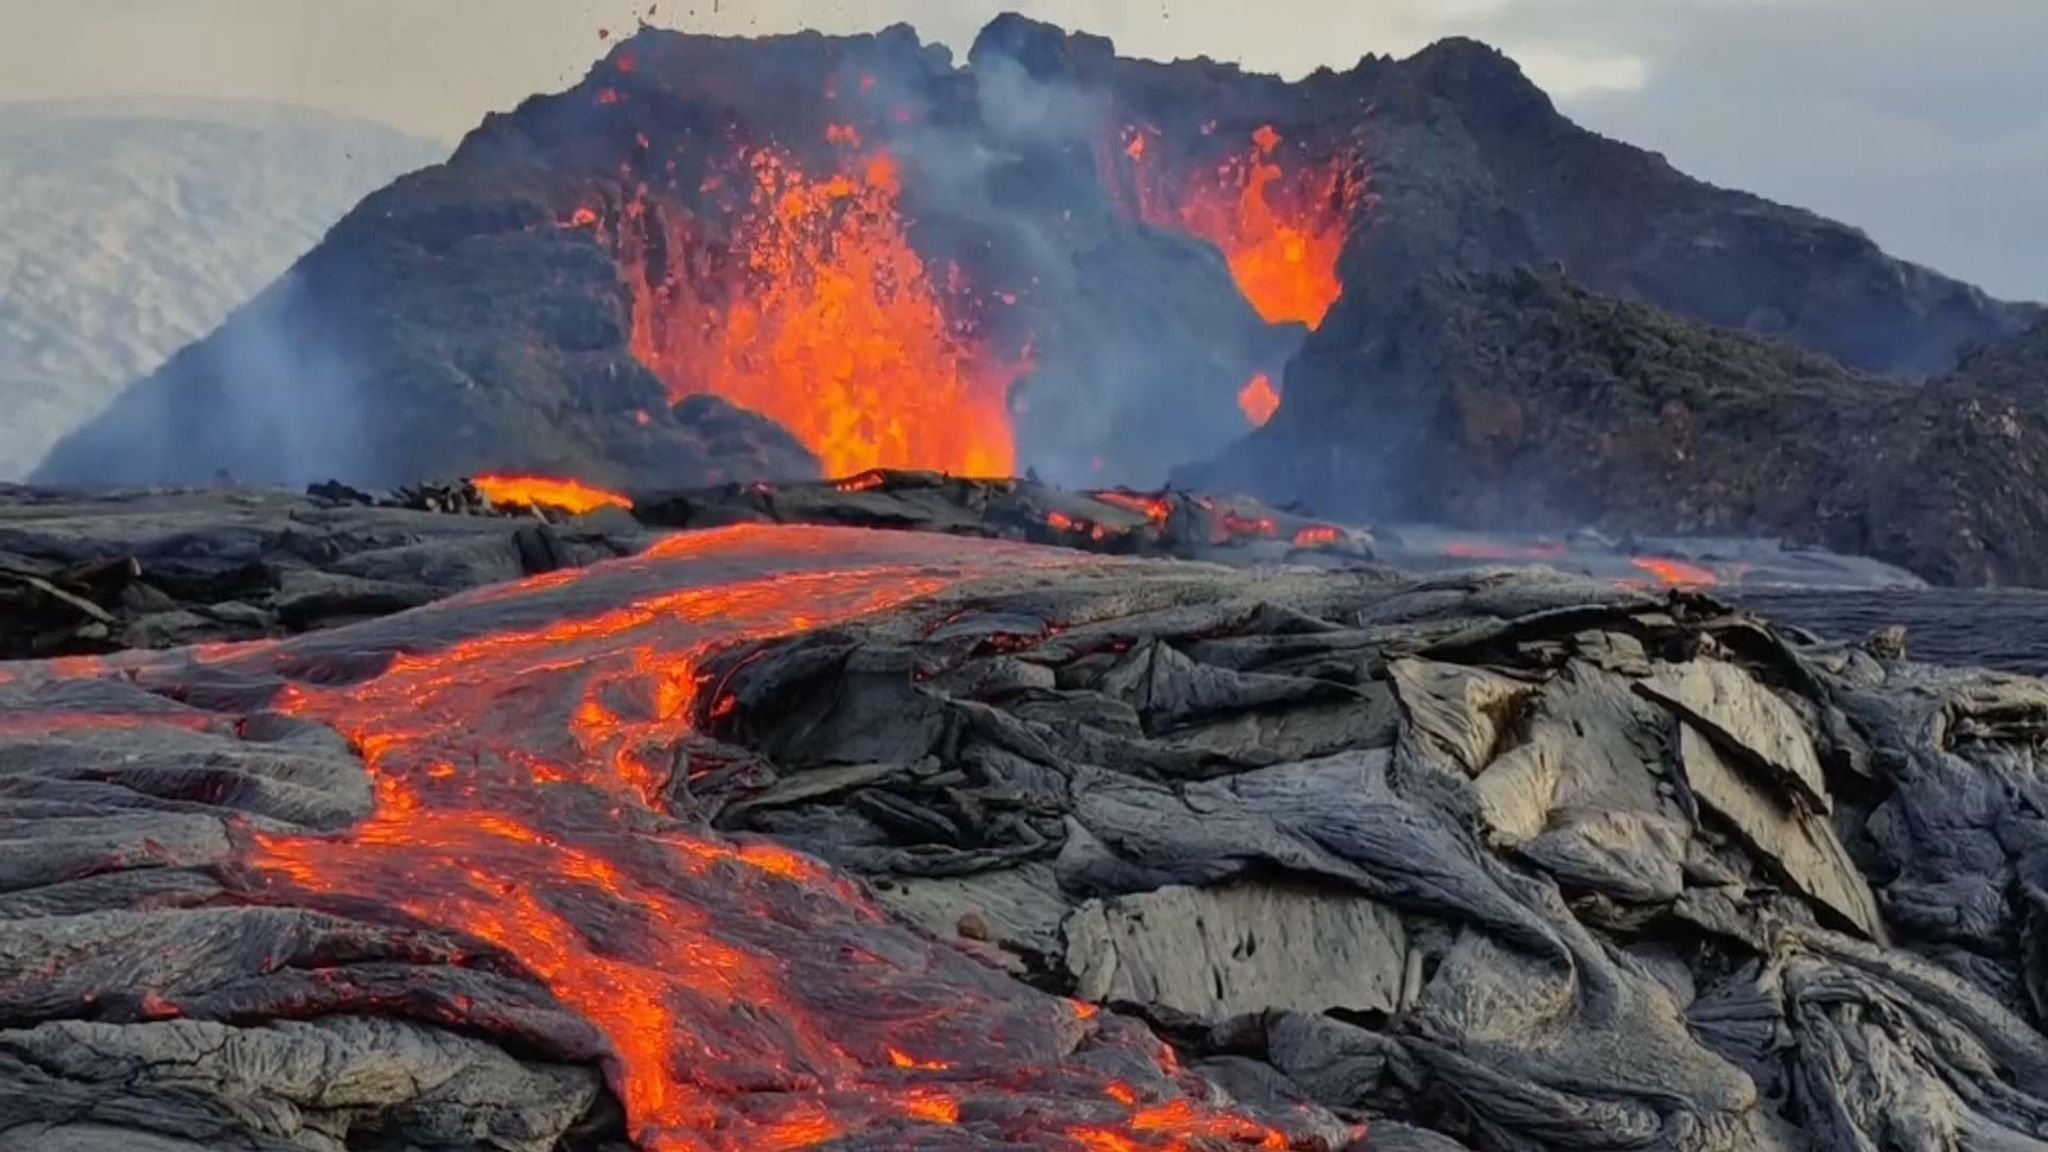 Сильные землетрясения извержения вулканов мощные гейзеры. Мауна-Лоа на Гавайях. Гавайский вулкан Мауна Лоа. Самый большой вулкан в мире Мауна Лоа. Извержение вулкана Мауна Лоа.